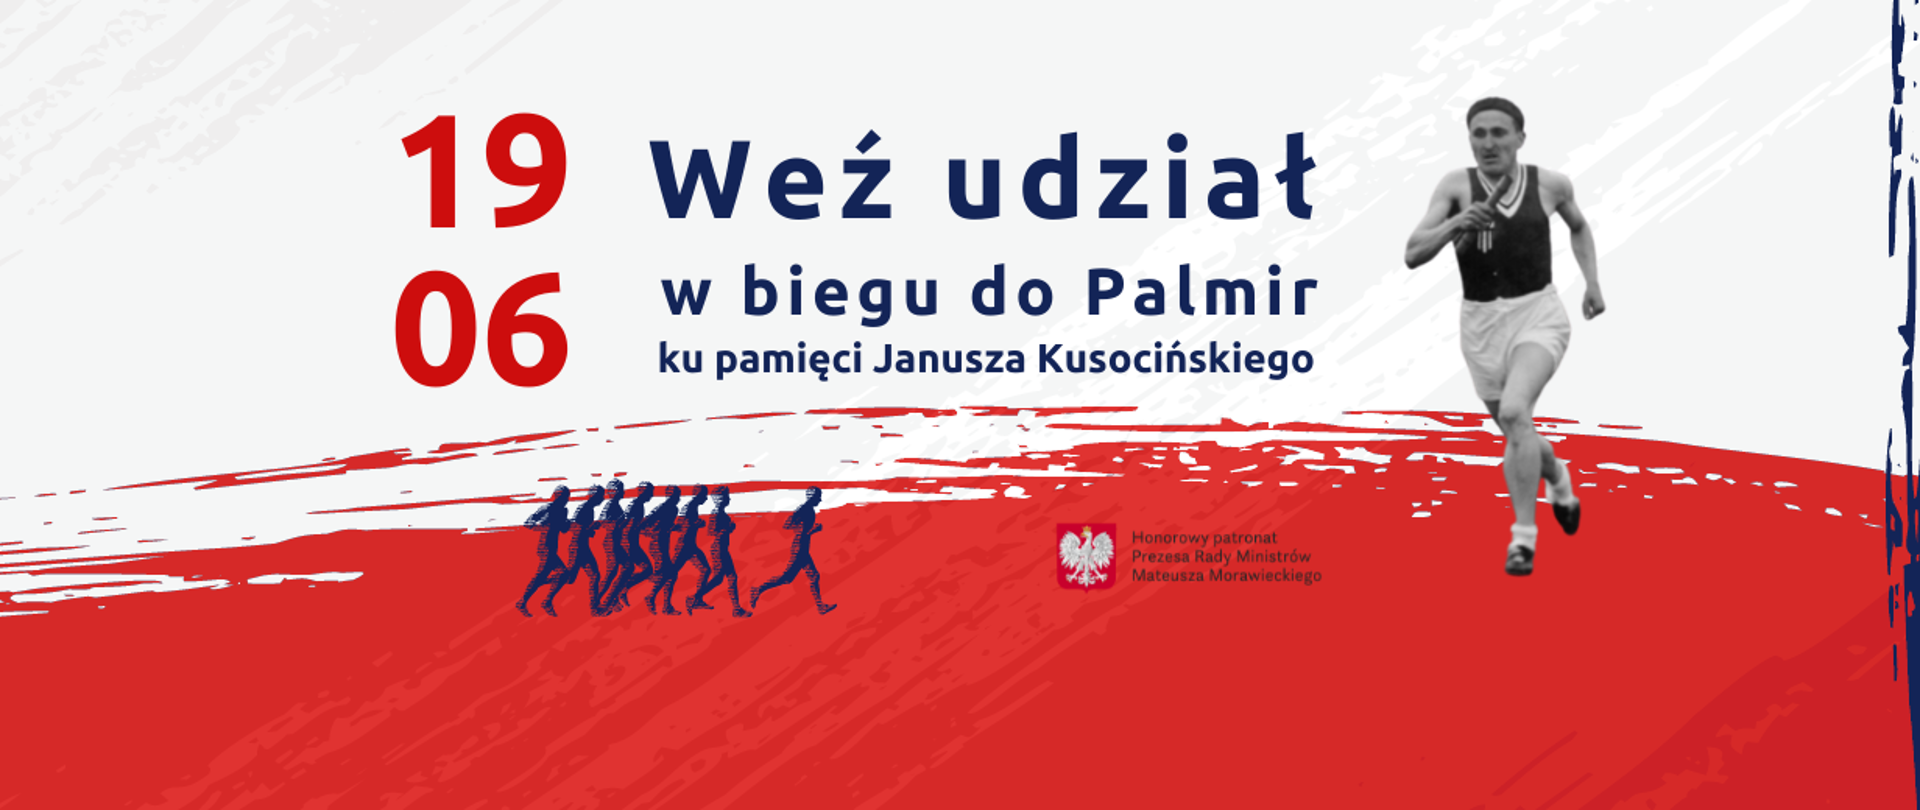 Napis na grafice: 19 czerwca, weź udział w biegu do Palmir ku pamięci Janusza Kusocińskiego, tło nawiązuje do biało-czerwonej flagi Polski. Obok napisu zdjęcie biegnącego Kusocińskiego. Na dole logo MFiPR